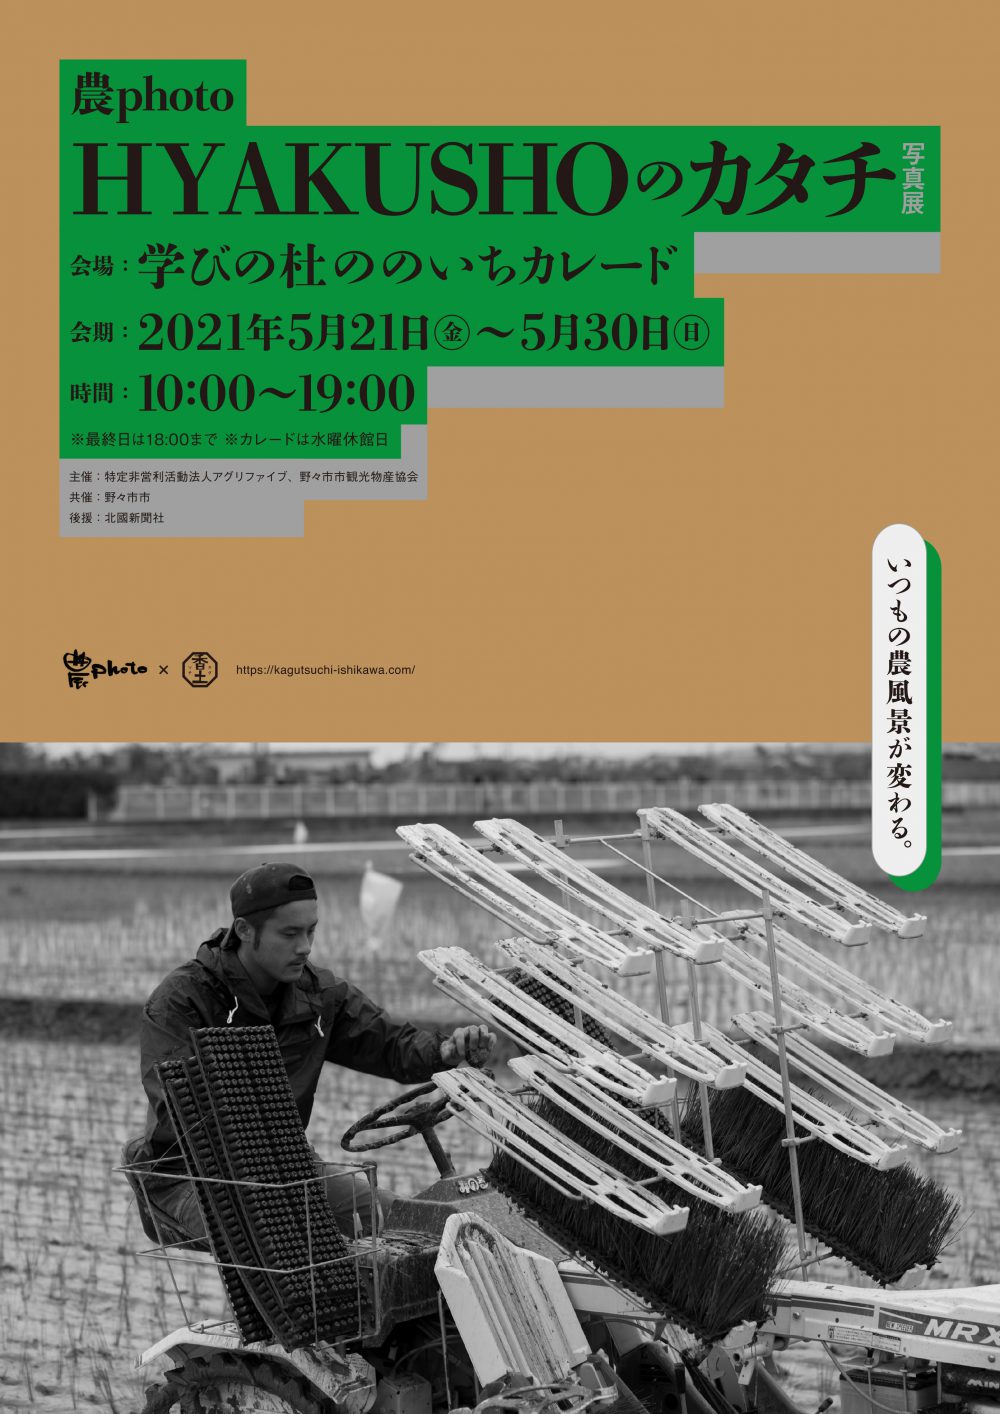 農フォト「HYAKUSHO」のカタチ写真展グラフィ...